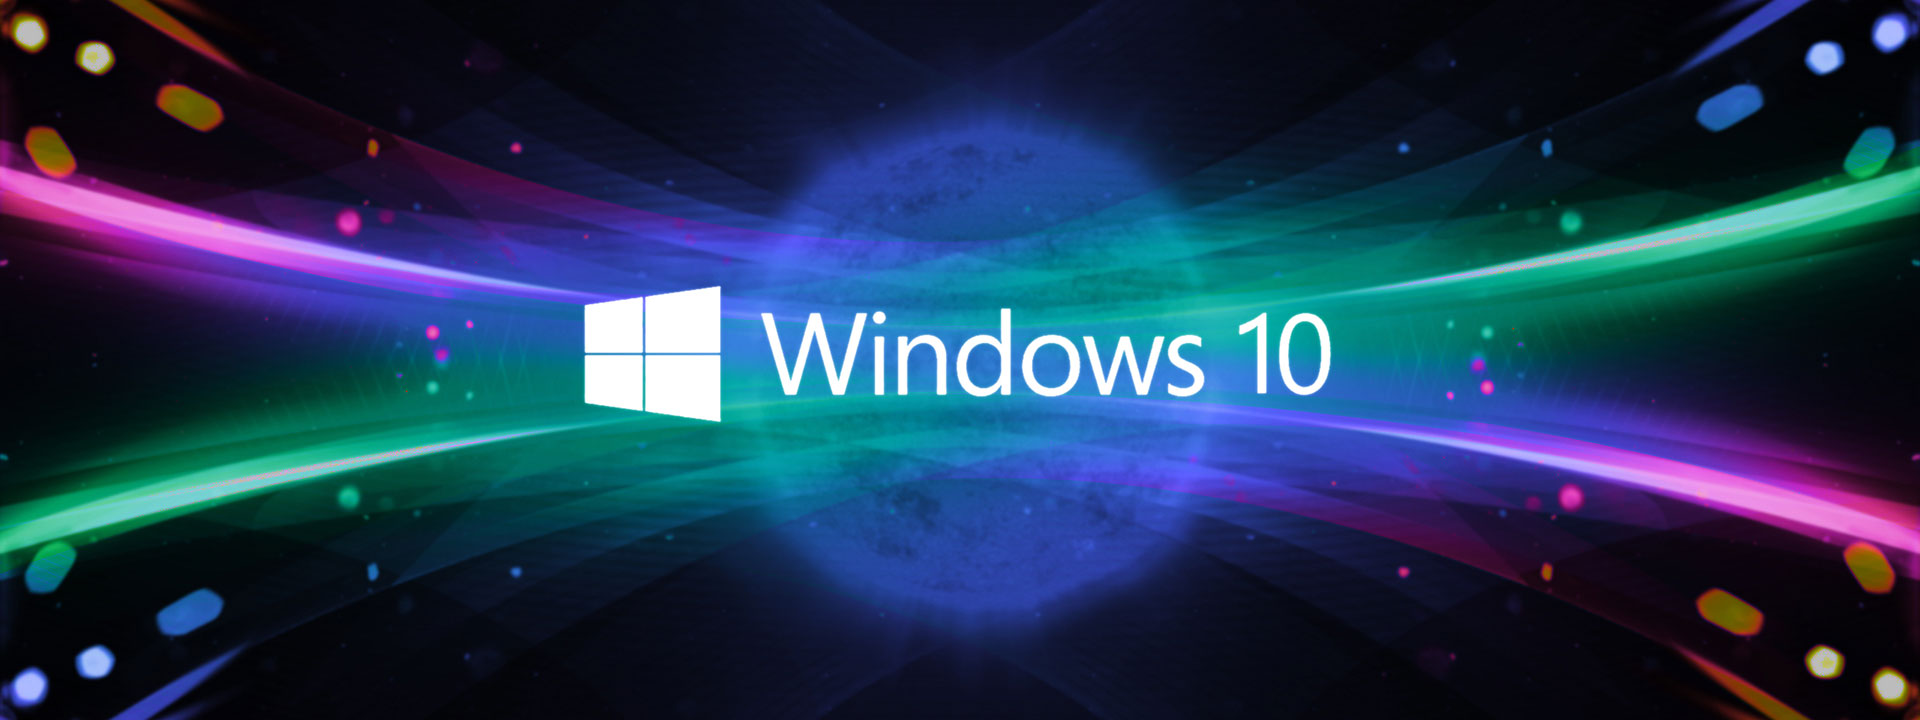 Khám phá ngay những tính năng mới và tốc độ cải thiện đáng kinh ngạc với Windows 10 cập nhật mới nhất, đem đến trải nghiệm sử dụng vô cùng tuyệt vời và hiệu quả.